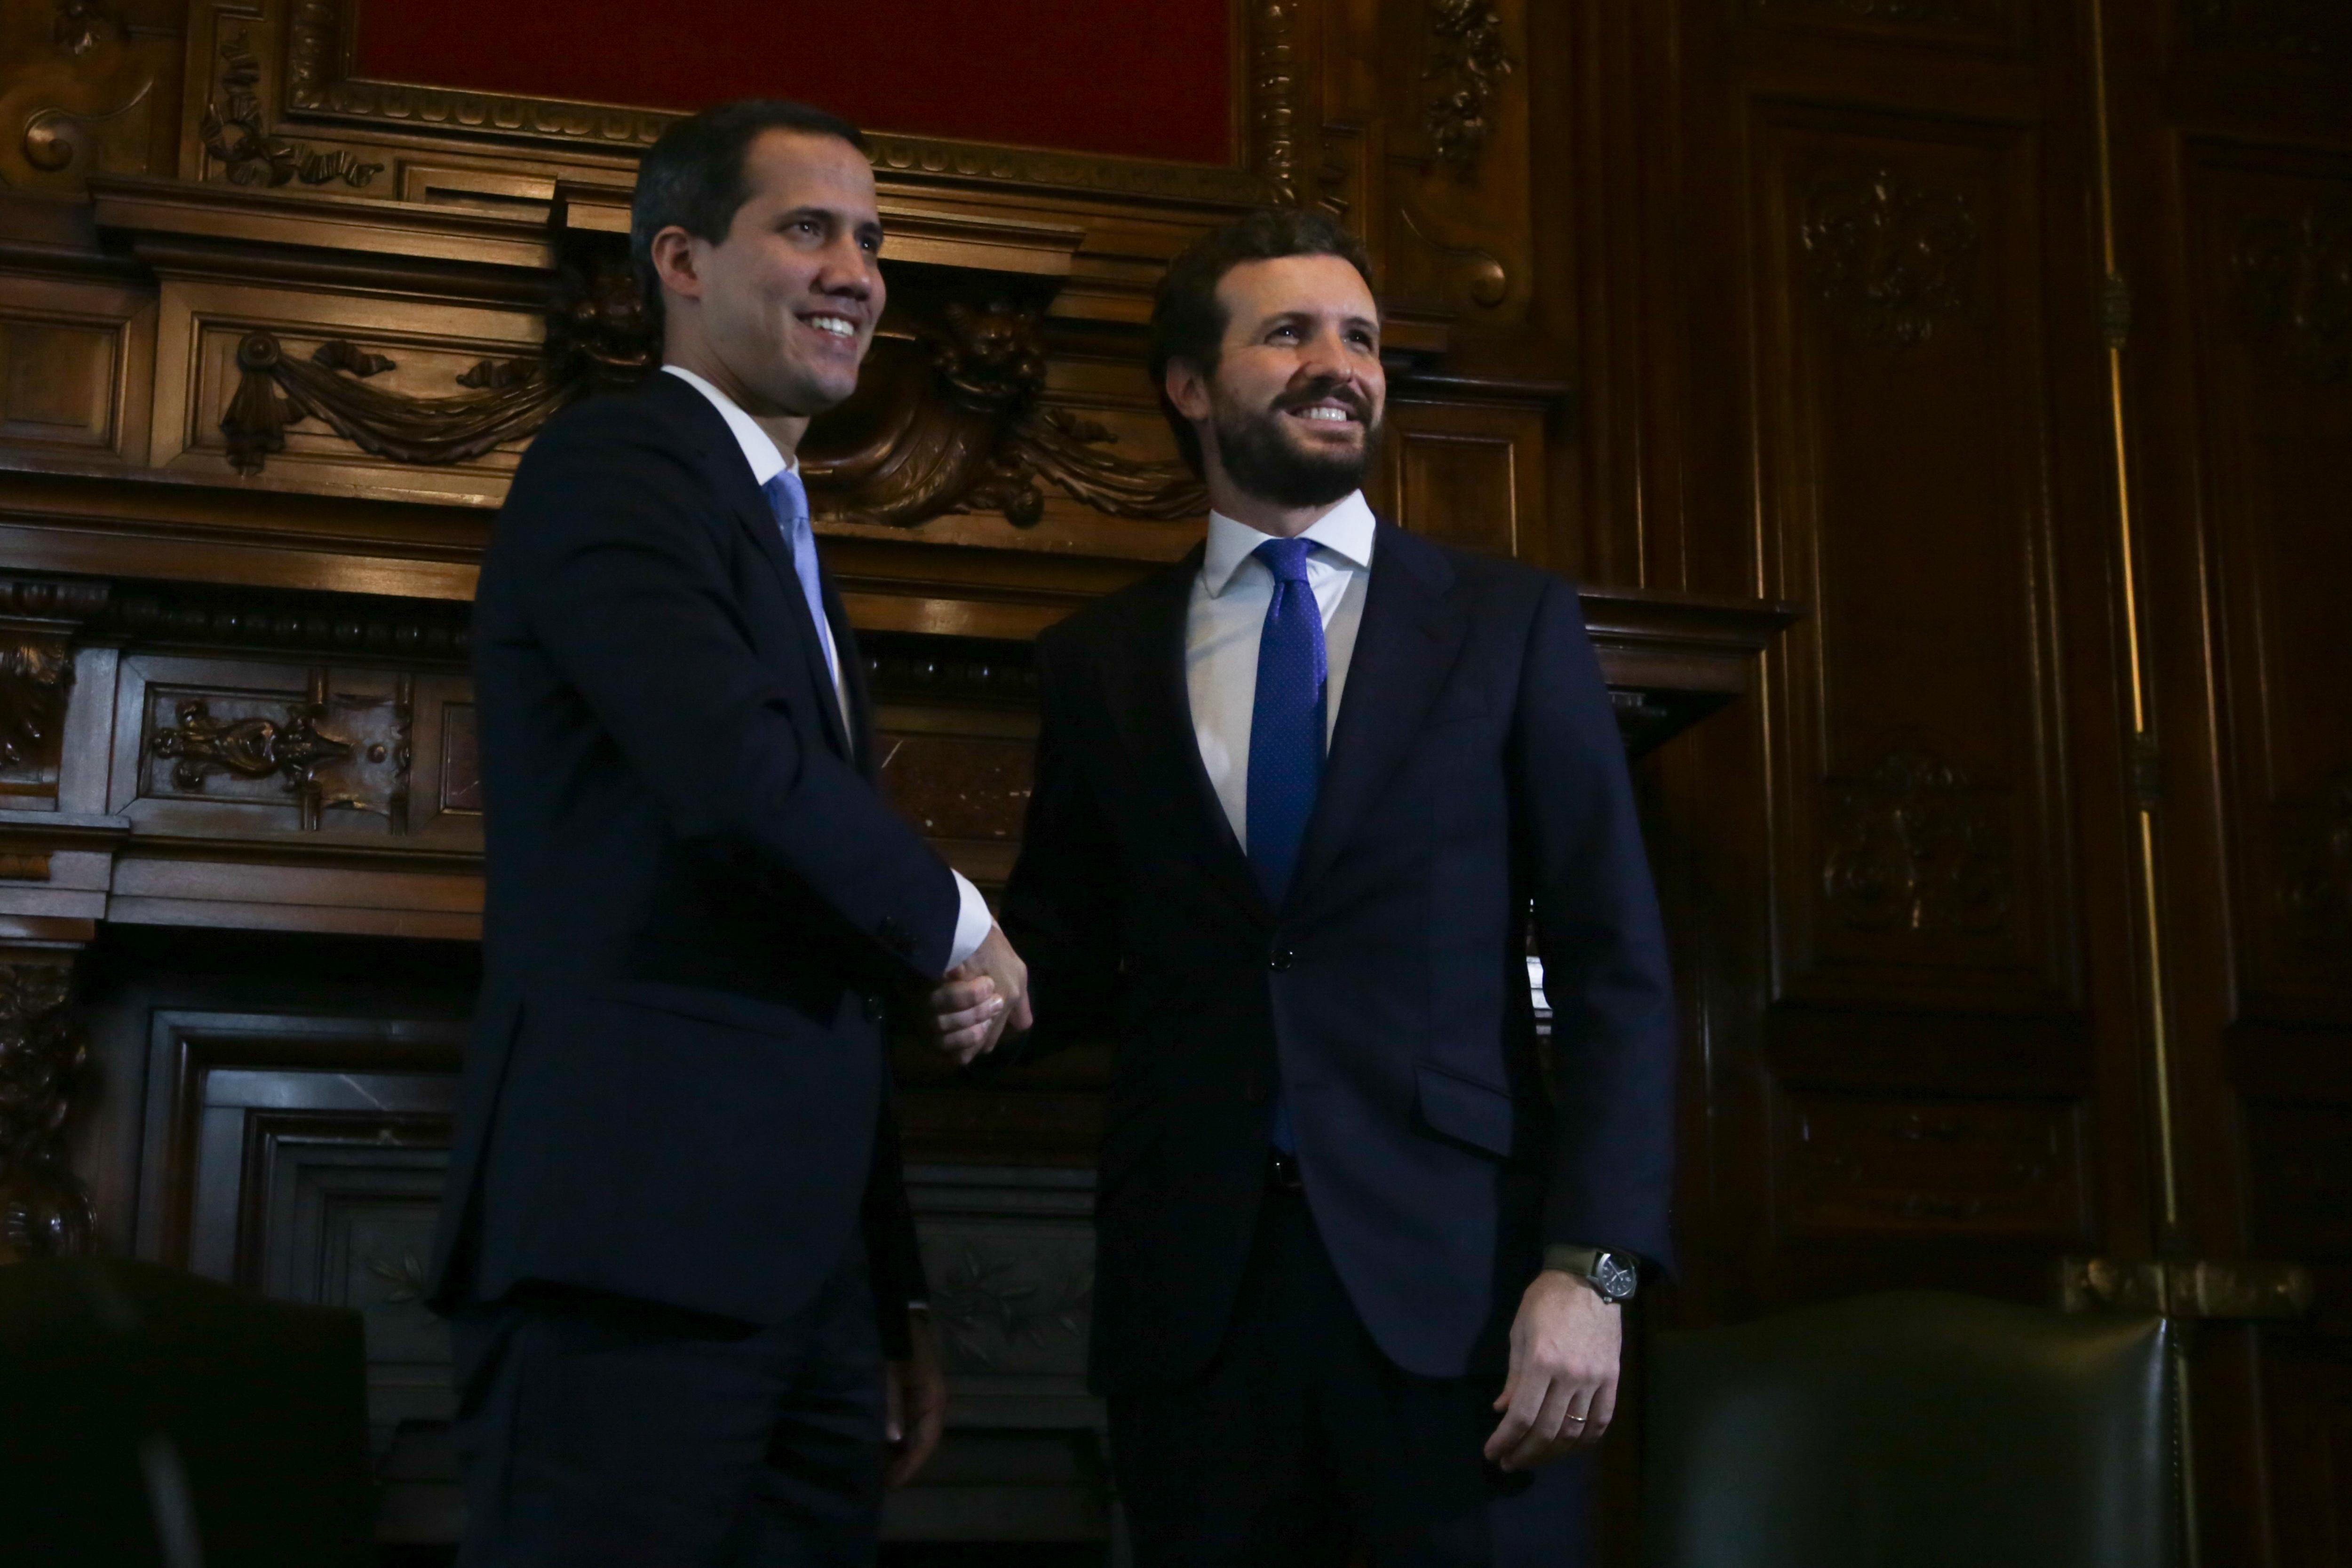 El Presidente encargado de Venezuela, Juan Guaidó se reúne con el presidente del PP, Pablo Casado en Madrid 